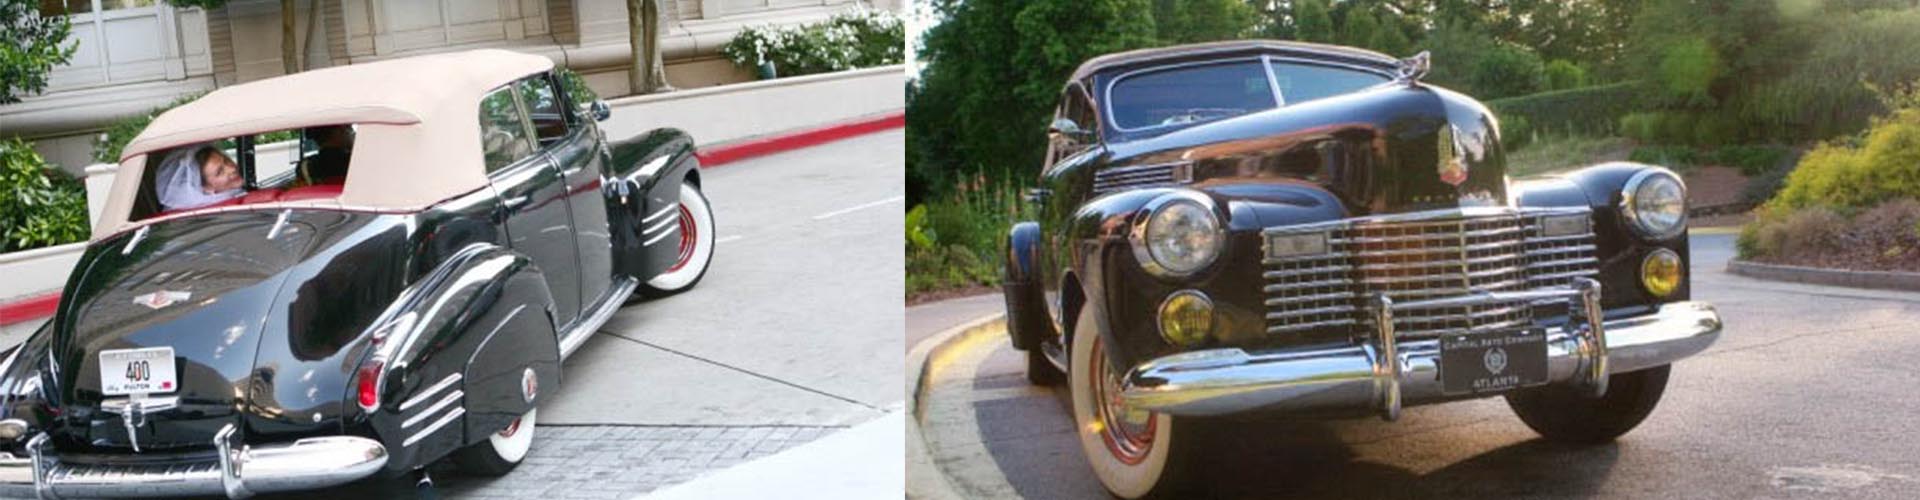 Classic Car Wedding Transportation 1941 Cadillac